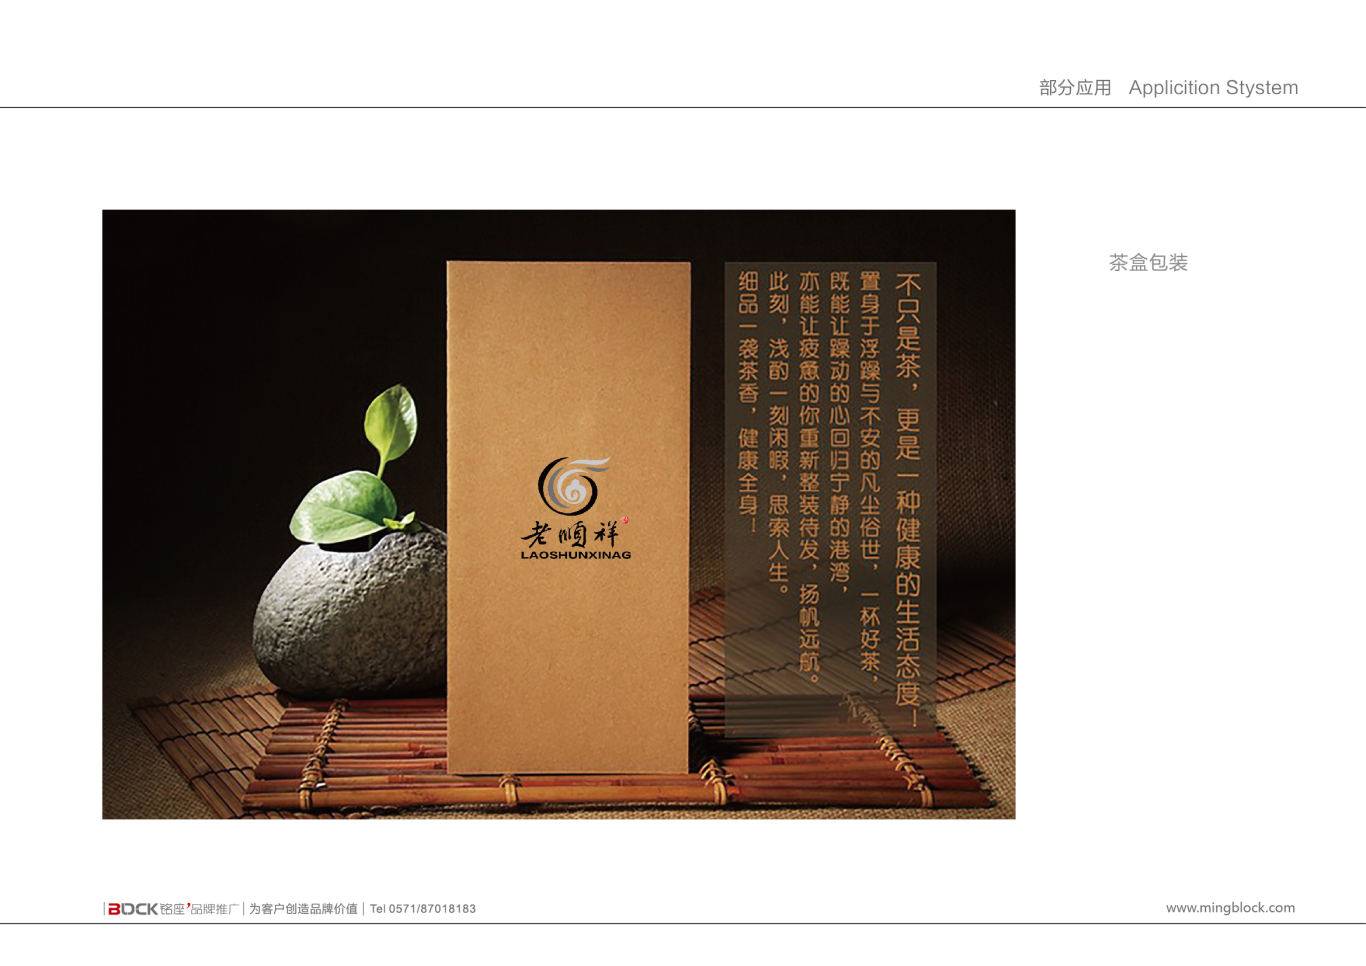 湖南老顺祥黑茶品牌标志设计图6